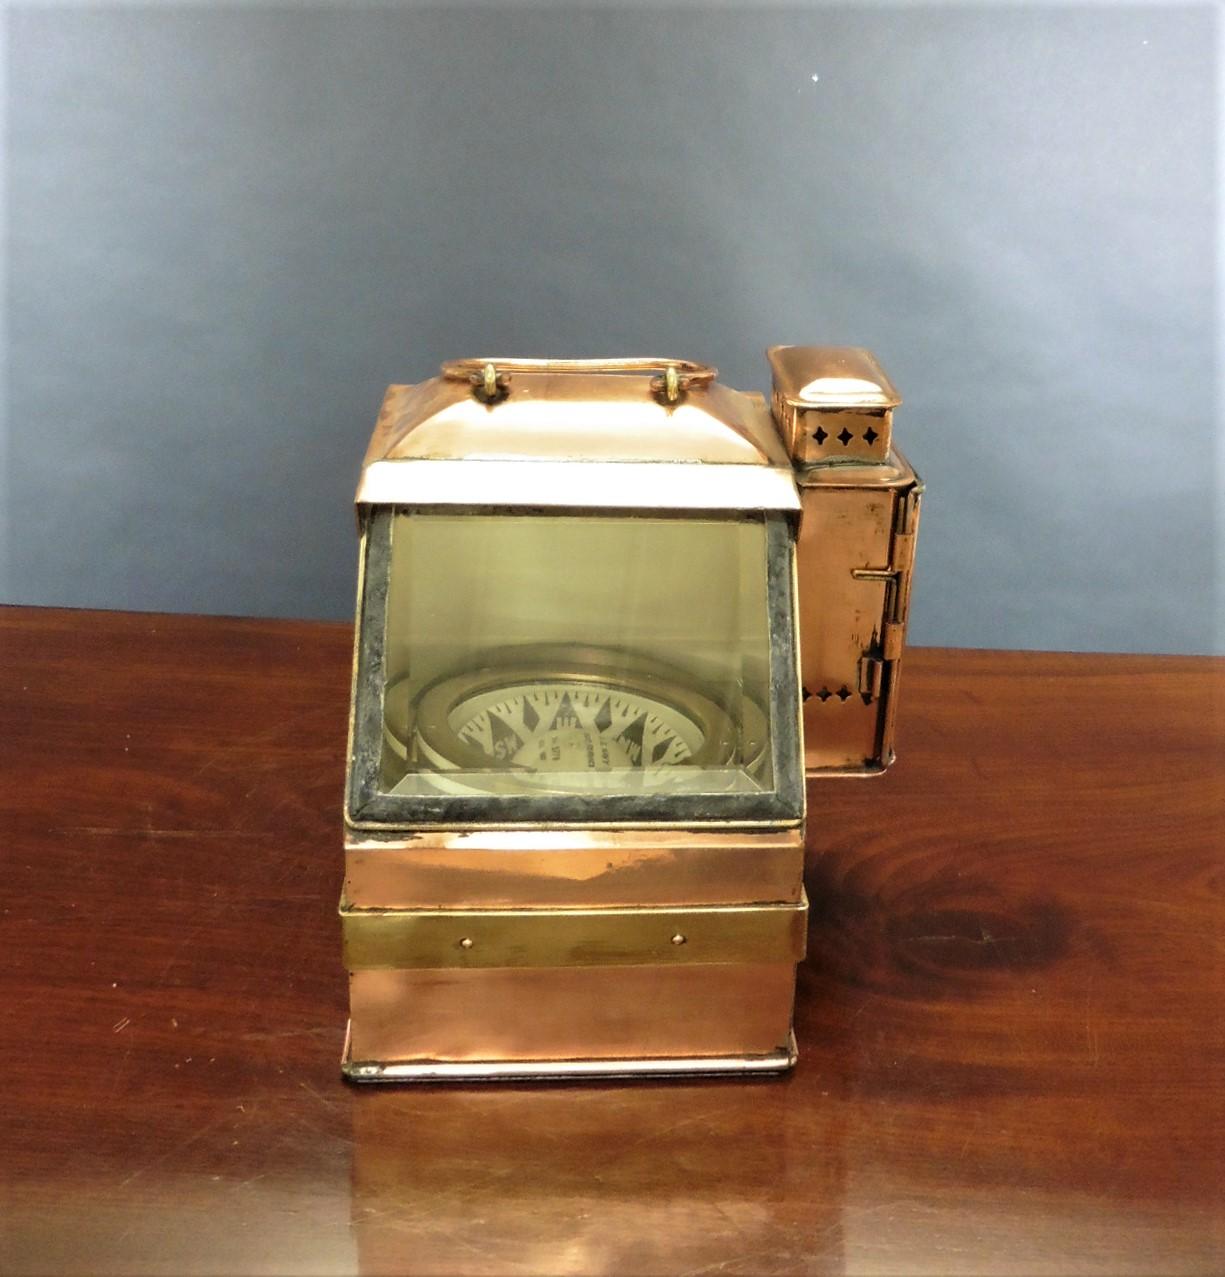 Nautischer Kompass aus der Zeit vor dem Ersten Weltkrieg von E.S.Ritchie

Nautischer Kompass, kardanisch gelagert in einem kupfernen Messinggehäuse mit schräger Glasöffnung und stark abgeschrägtem Glas. Flache Messinglünette mit fünf